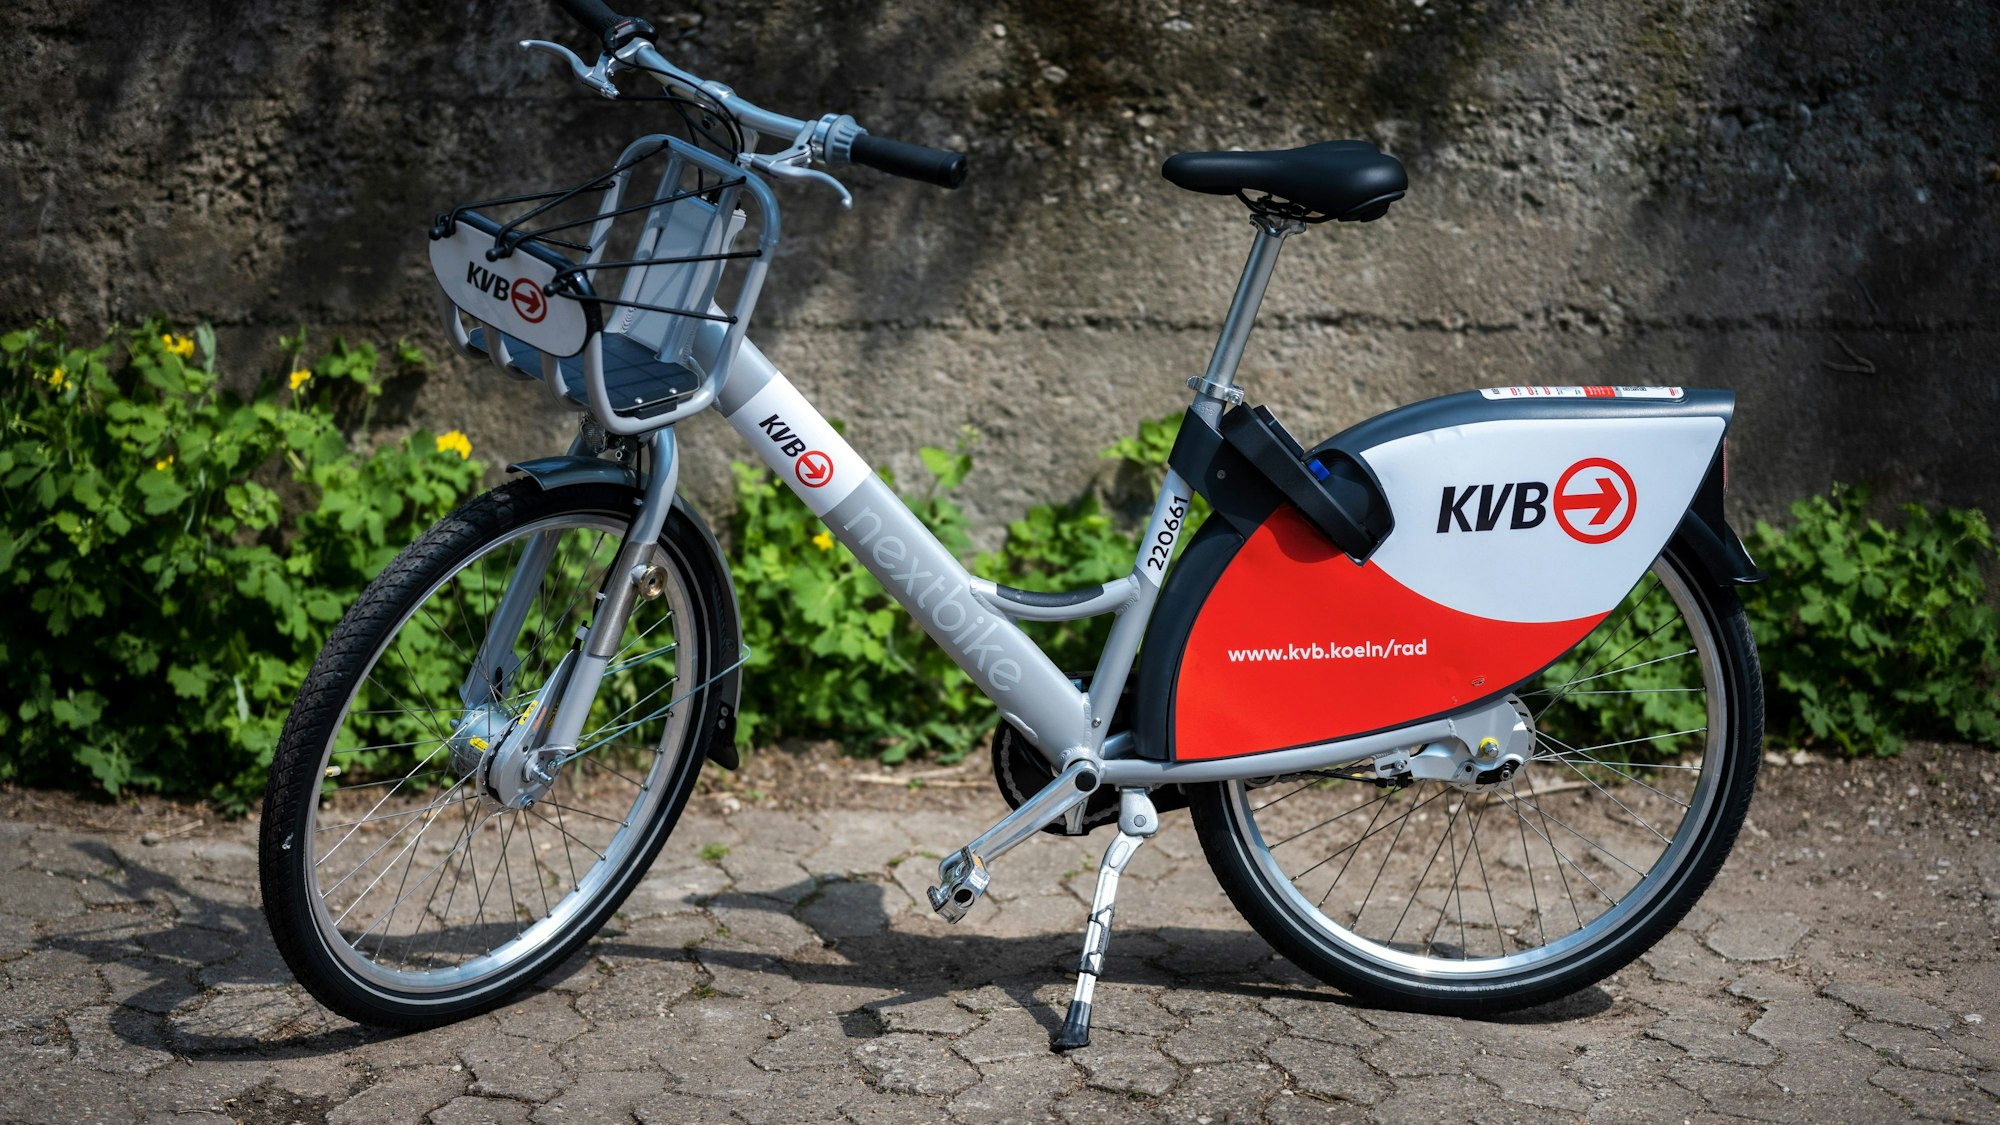 Ein Fahrrad mit nextbike und KVB Logos.